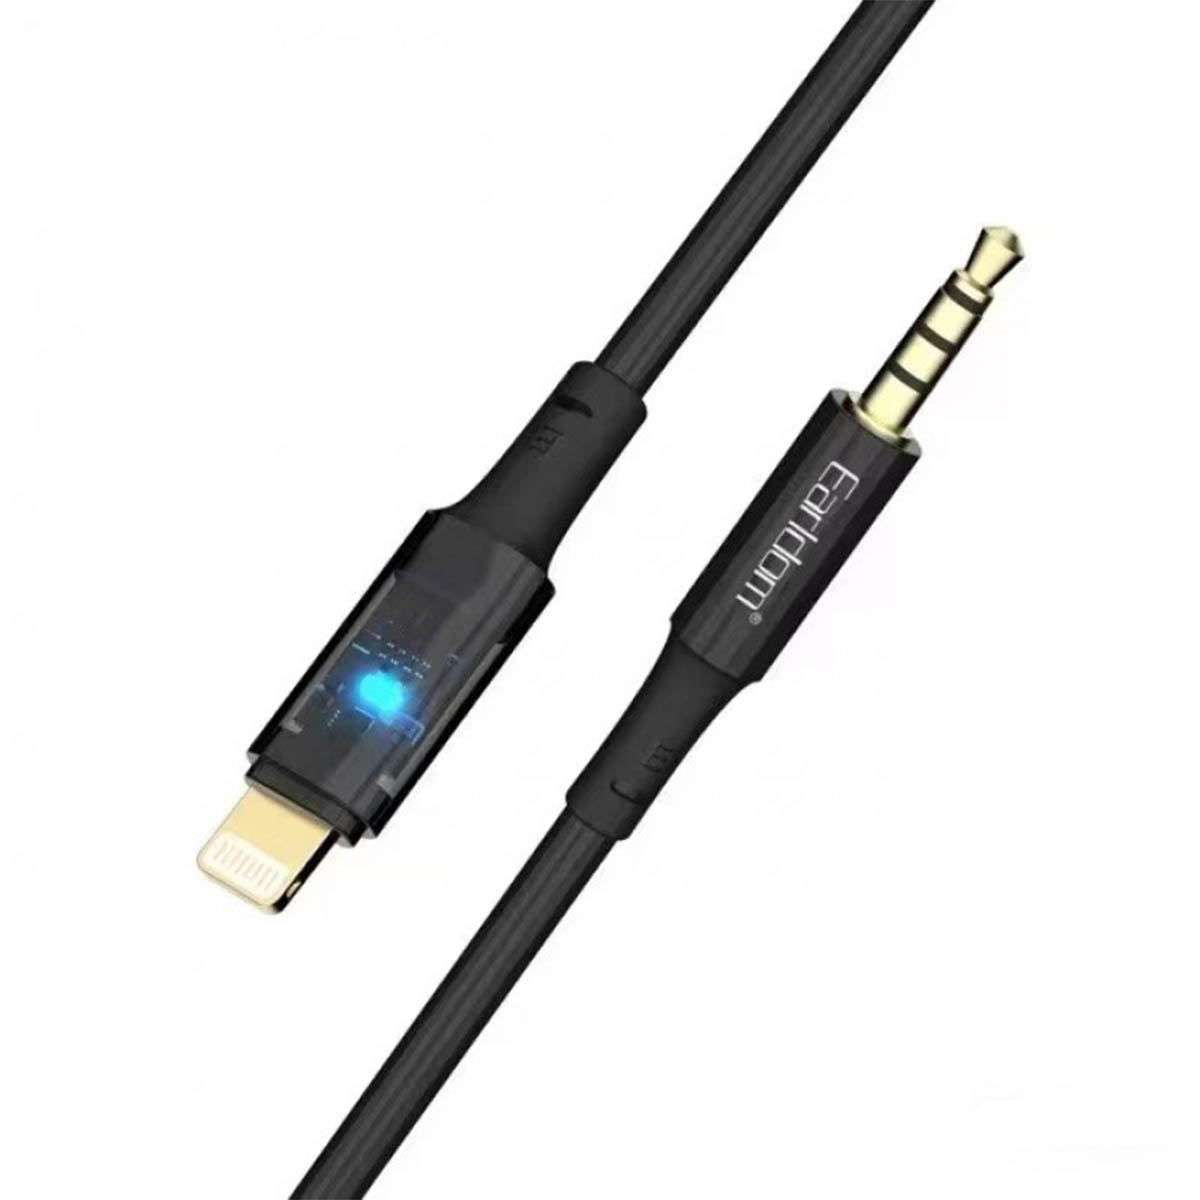 Аудио кабель, переходник EARLDOM AUX52, Jack 3.5 мм на Lightning 8 pin, длина 1 метр, цвет черный